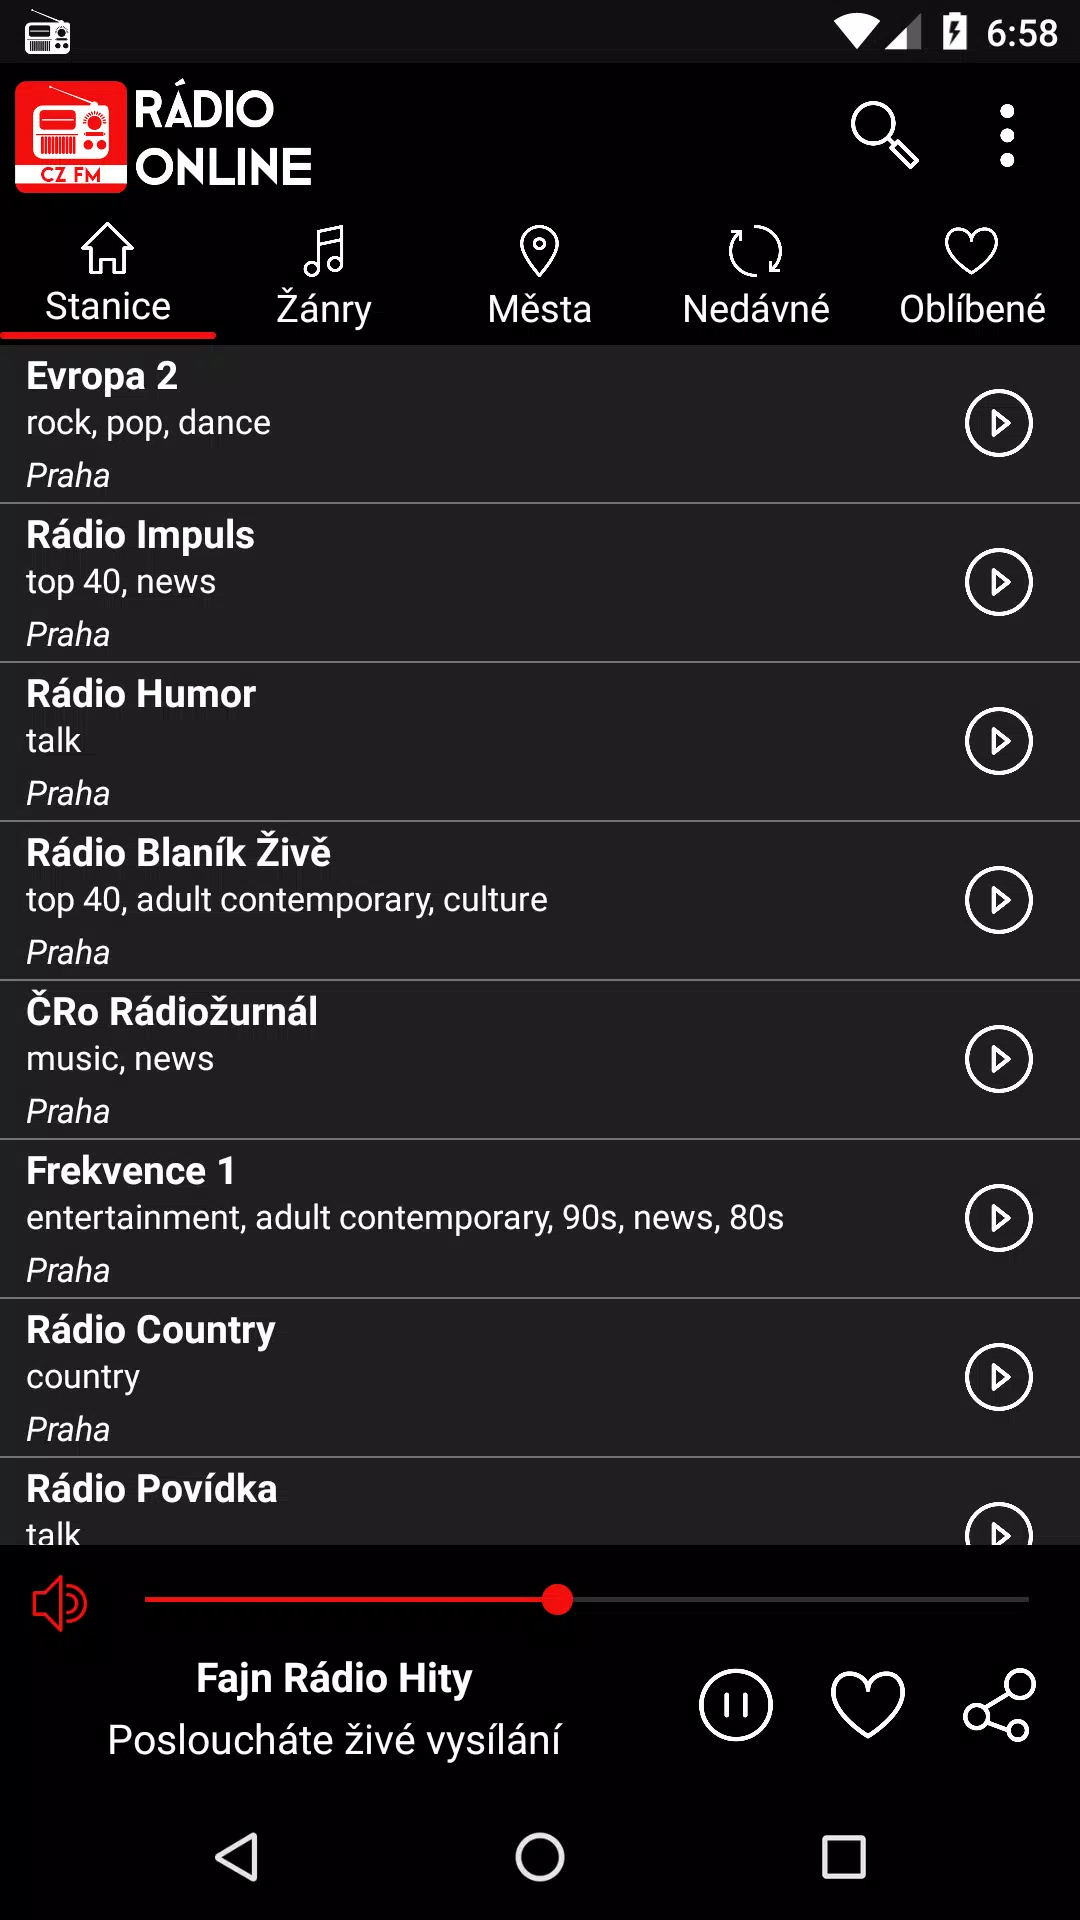 Rádio Online Česká for Android - APK Download